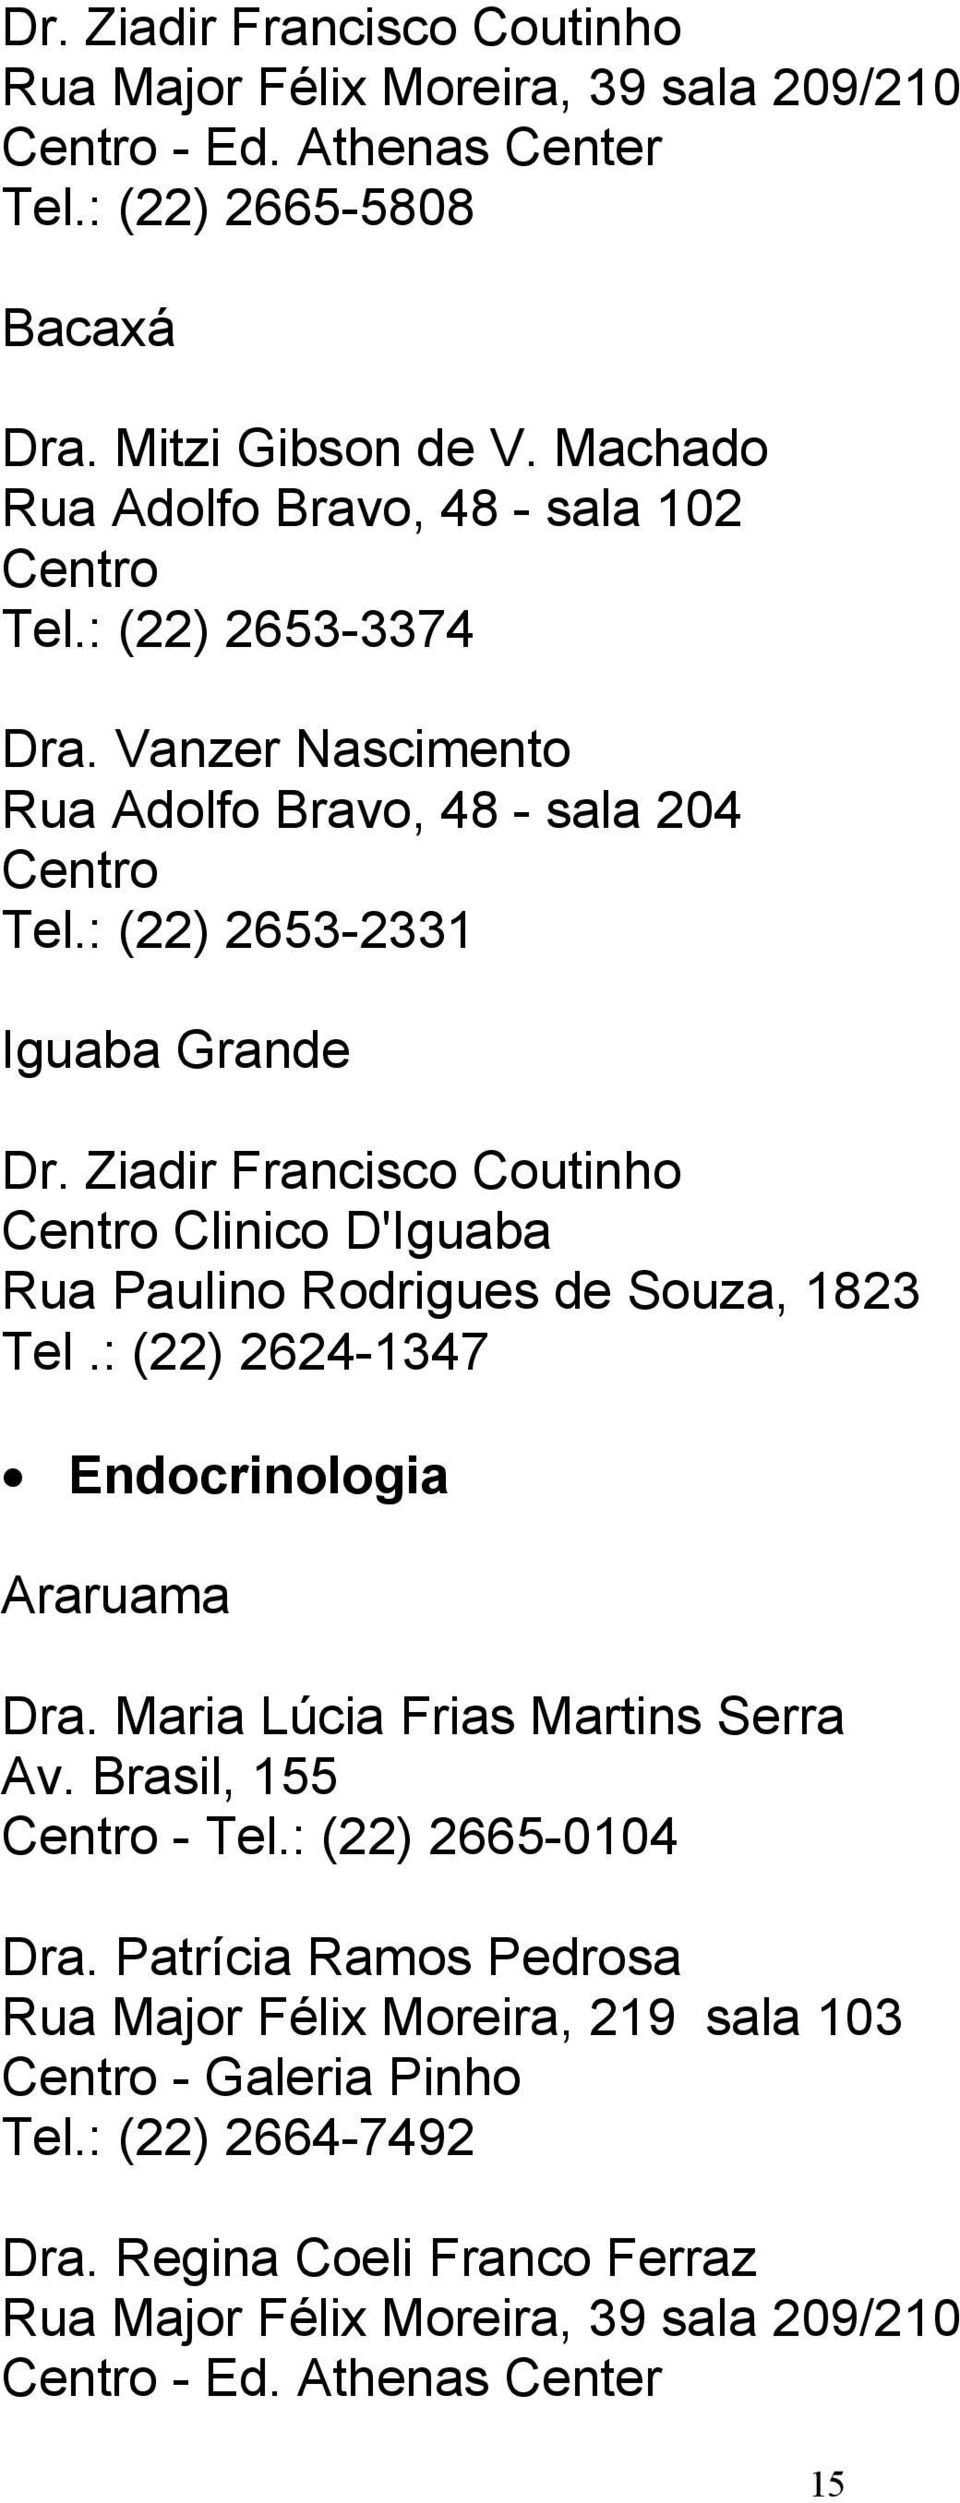 Ziadir Francisco Coutinho Tel.: (22) 2624-1347 Endocrinologia Dra. Maria Lúcia Frias Martins Serra Av. Brasil, 155 Centro - Tel.: (22) 2665-0104 Dra.